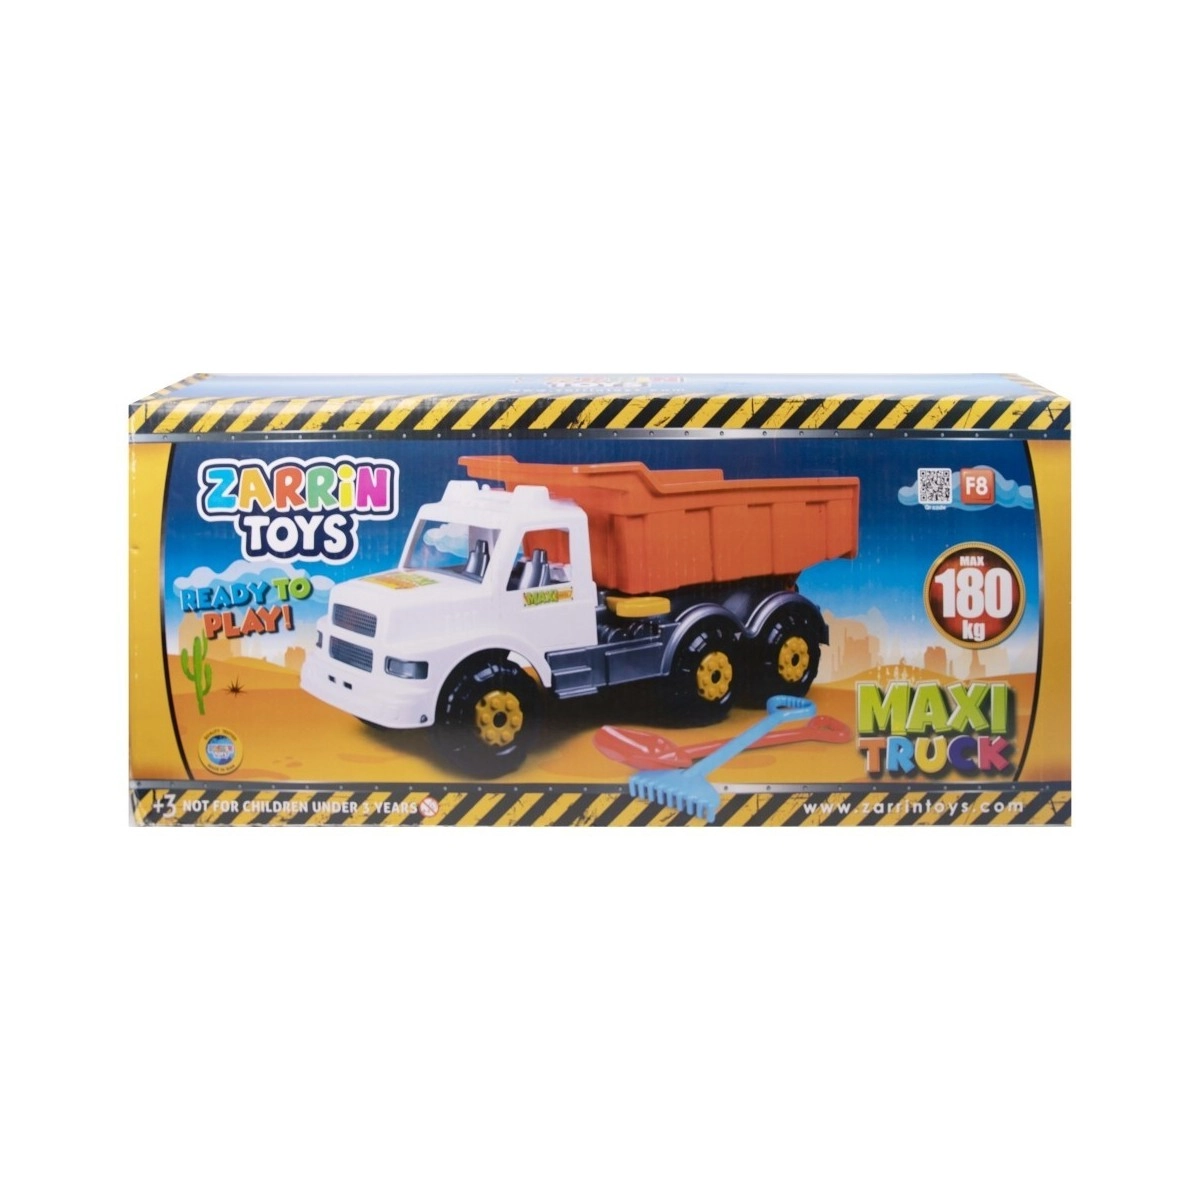 ماشین کامیون باری Maxi Truck زرین تویز  180 کیلو  zarin toys